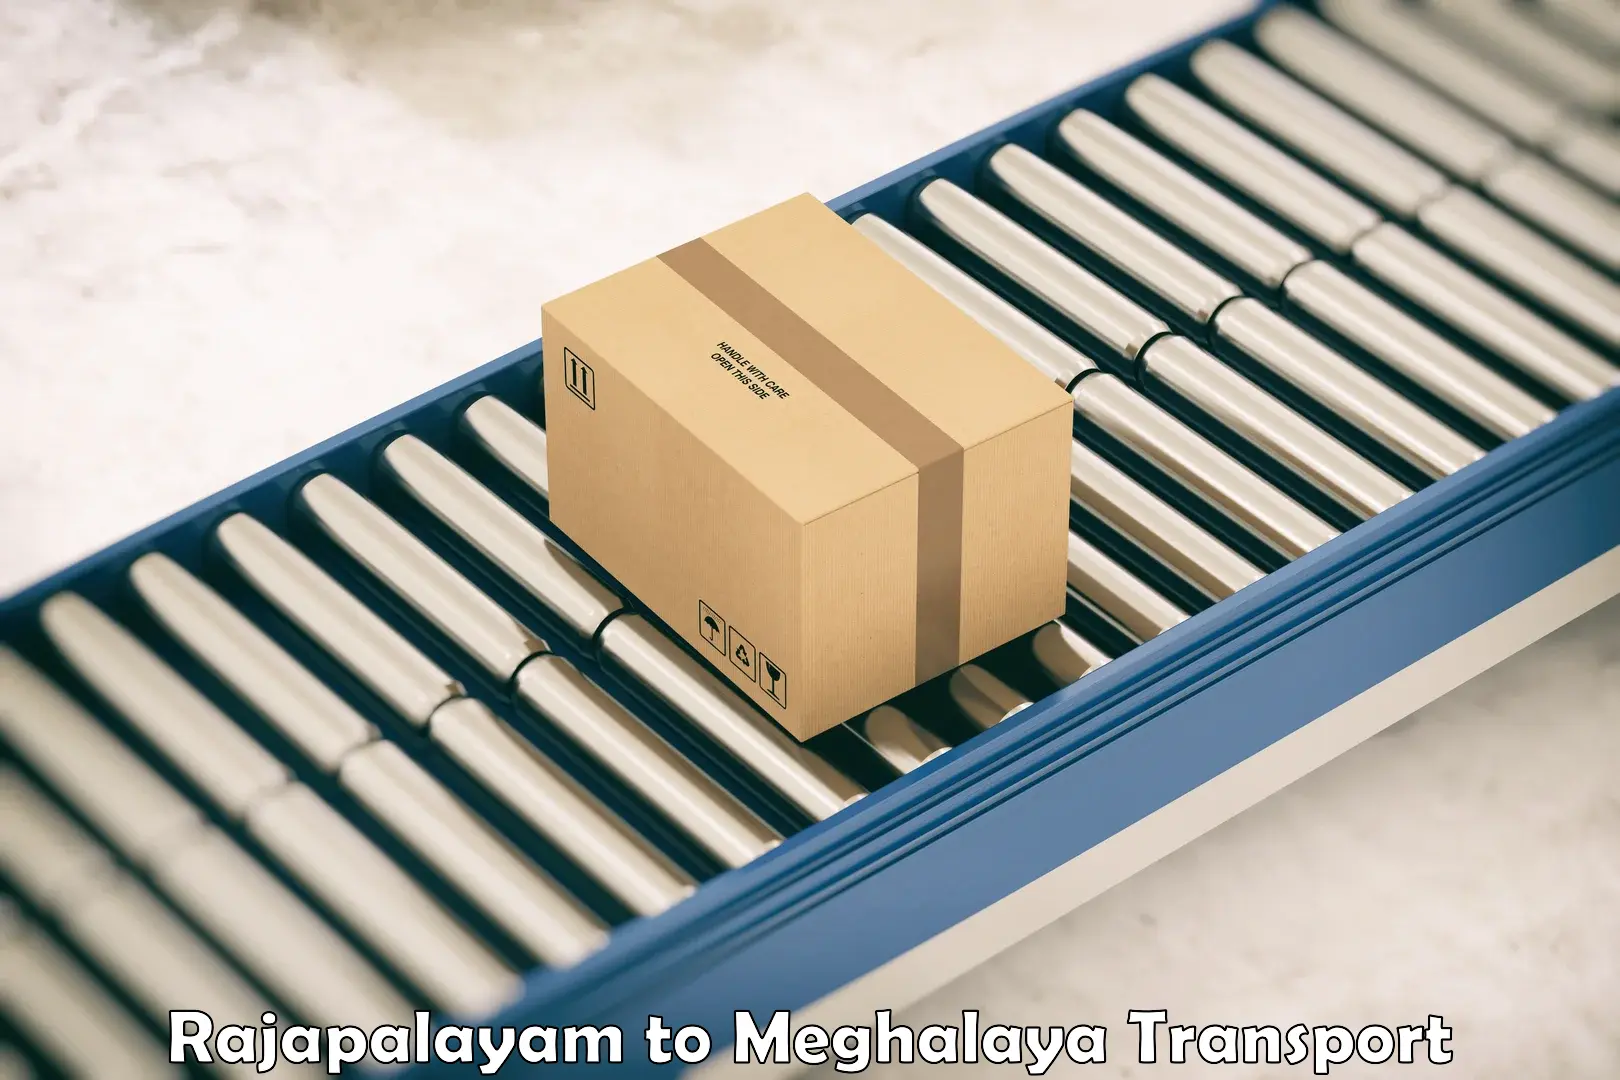 Land transport services in Rajapalayam to NIT Meghalaya